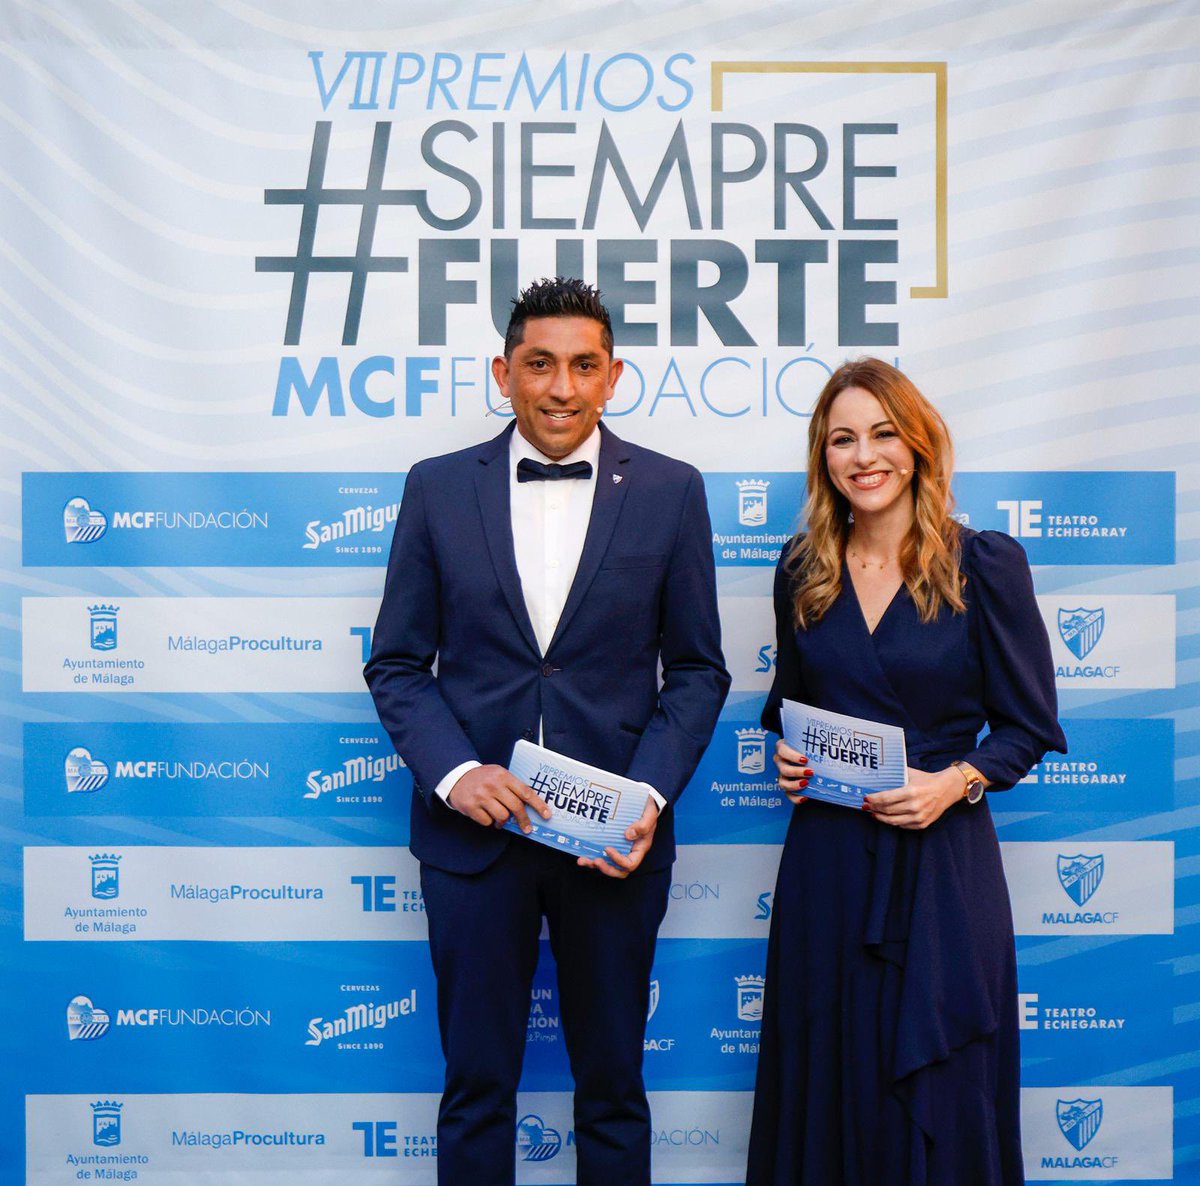 Gracias un año más a la Fundacion del @MalagaCF por contar conmigo para conducir los #PremiosSiempreFuerte junto a mi queridísimo “Basti”. La memoria y el legado de Pablo Ráez sigue con nosotros. Enhorabuena a todos los premiados ❤️ #SiempreFuerte